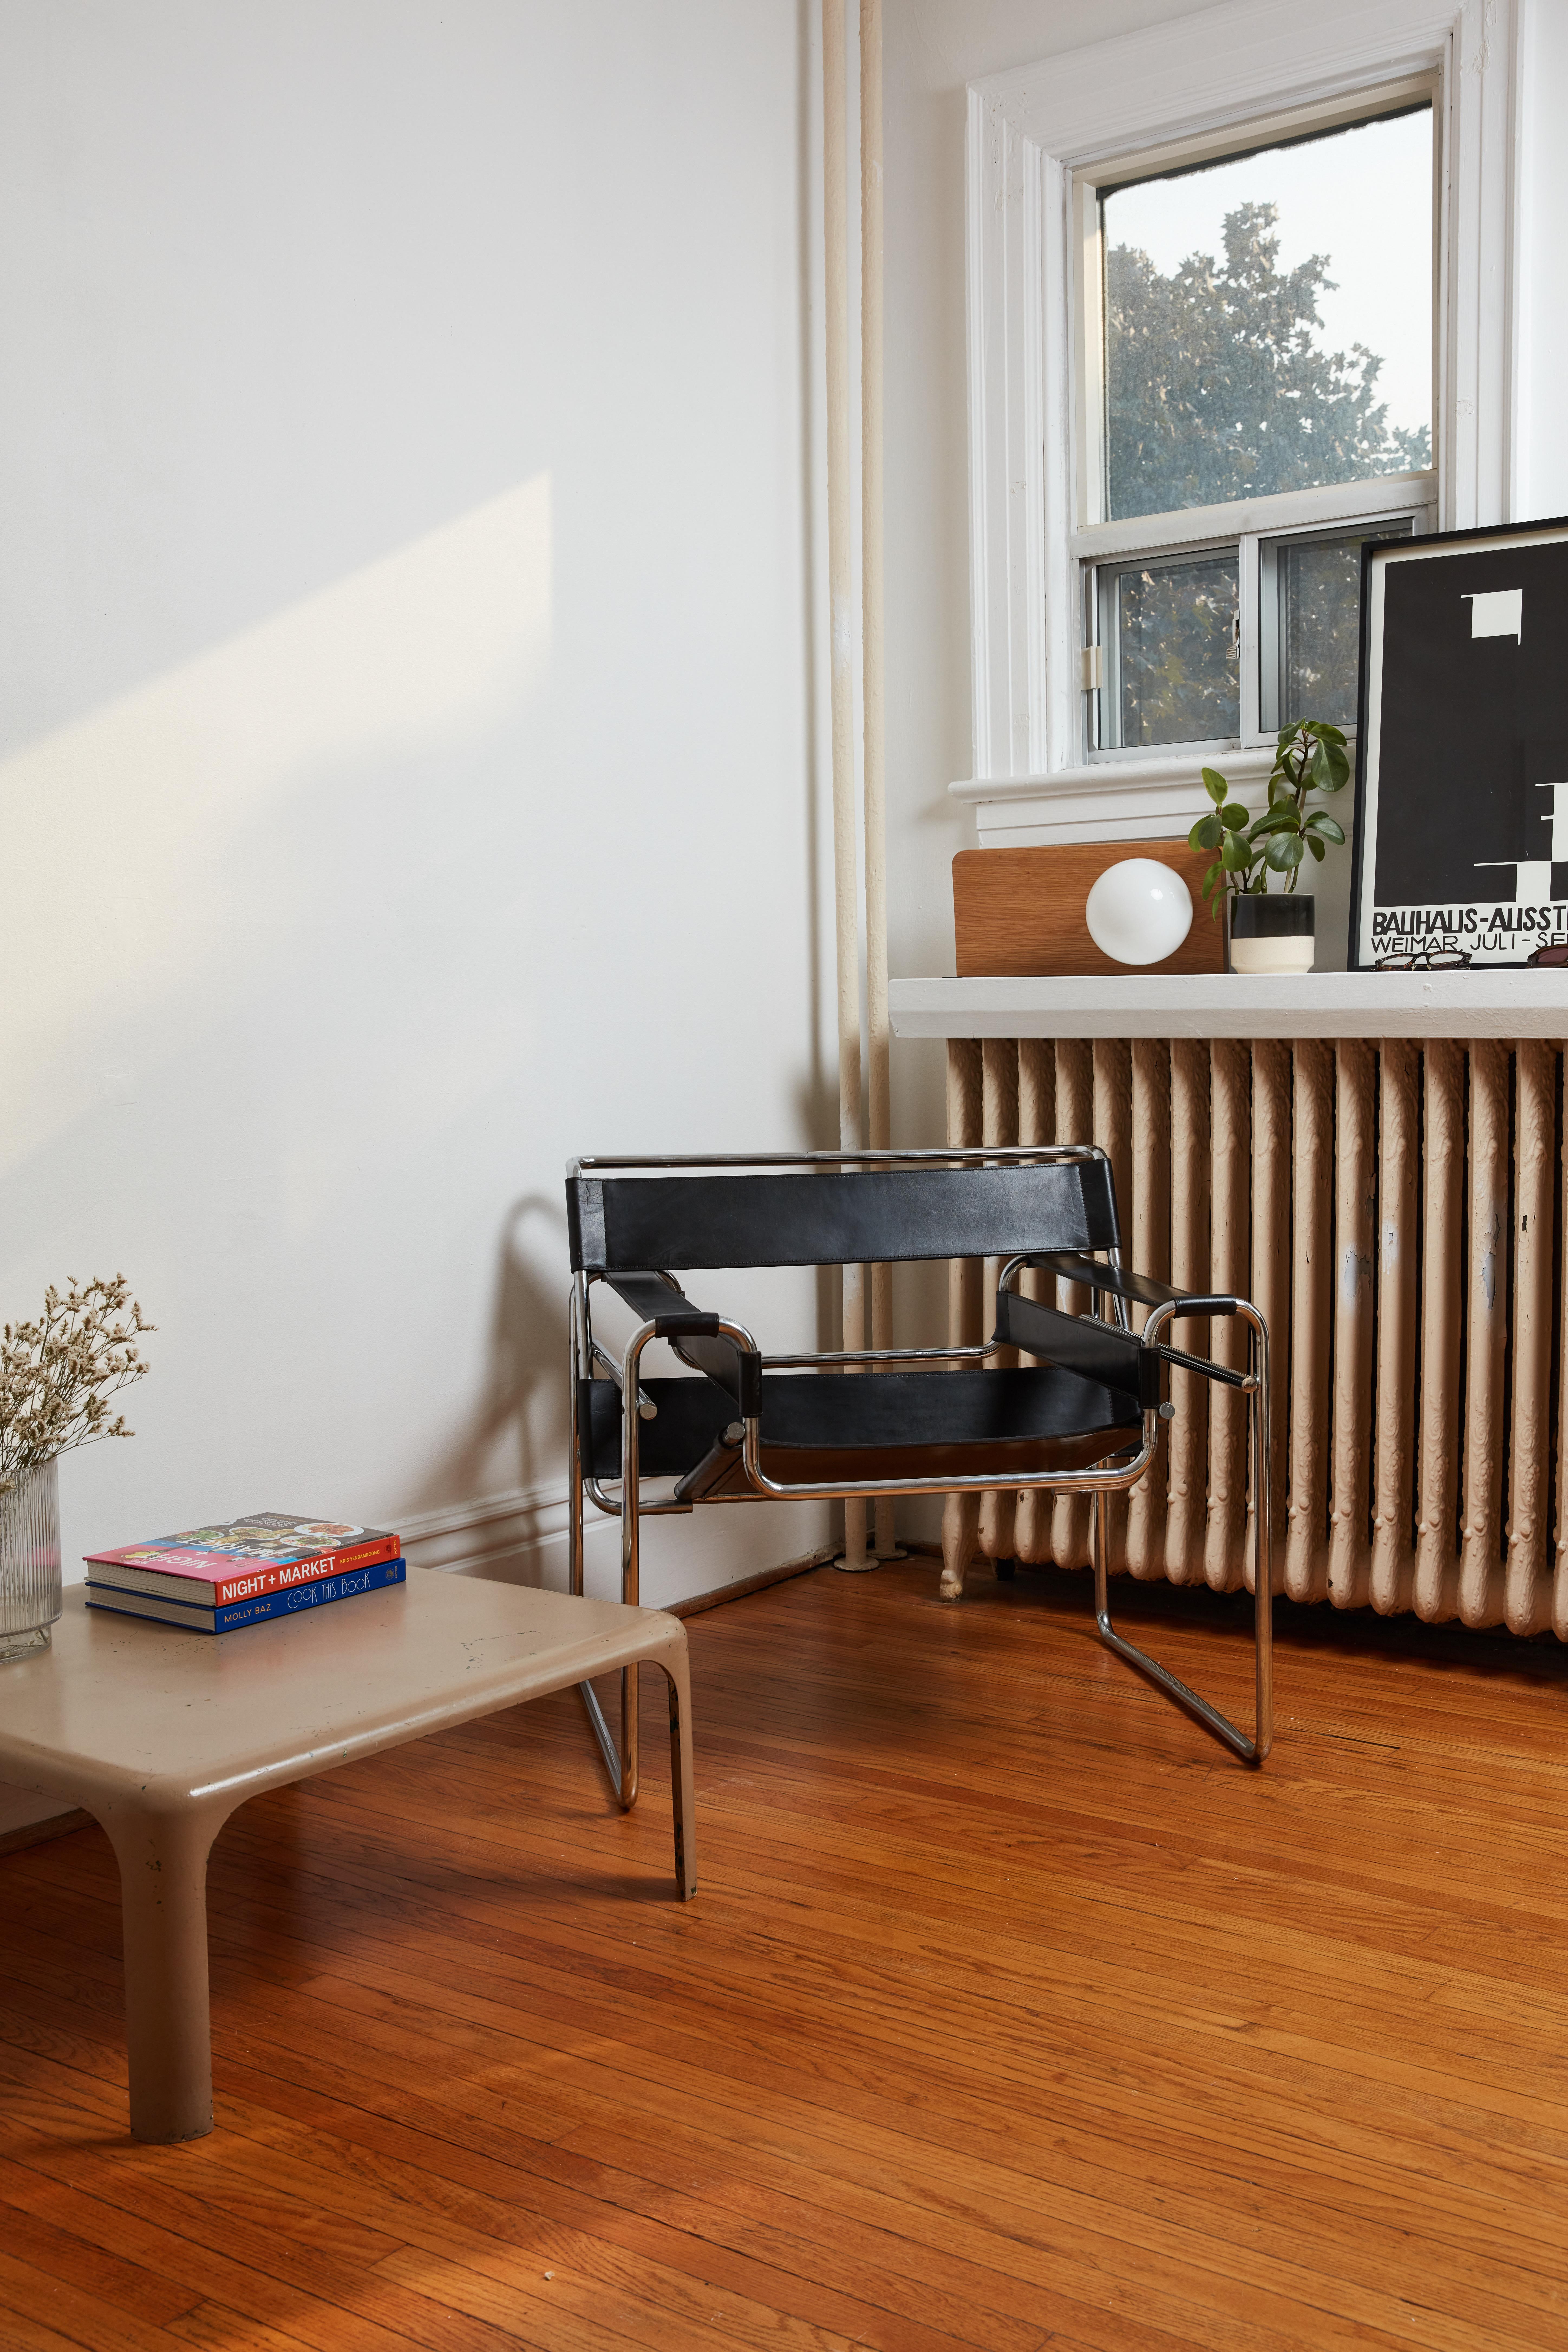 Der Wassily Chair, der von Marcel Breuer während seiner Zeit am Bauhaus entworfen wurde, ist eine Ikone des modernen und minimalistischen Designs. Mit seinem charakteristischen verchromten Rohrrahmen und den kunstvoll angeordneten Lederriemen ist